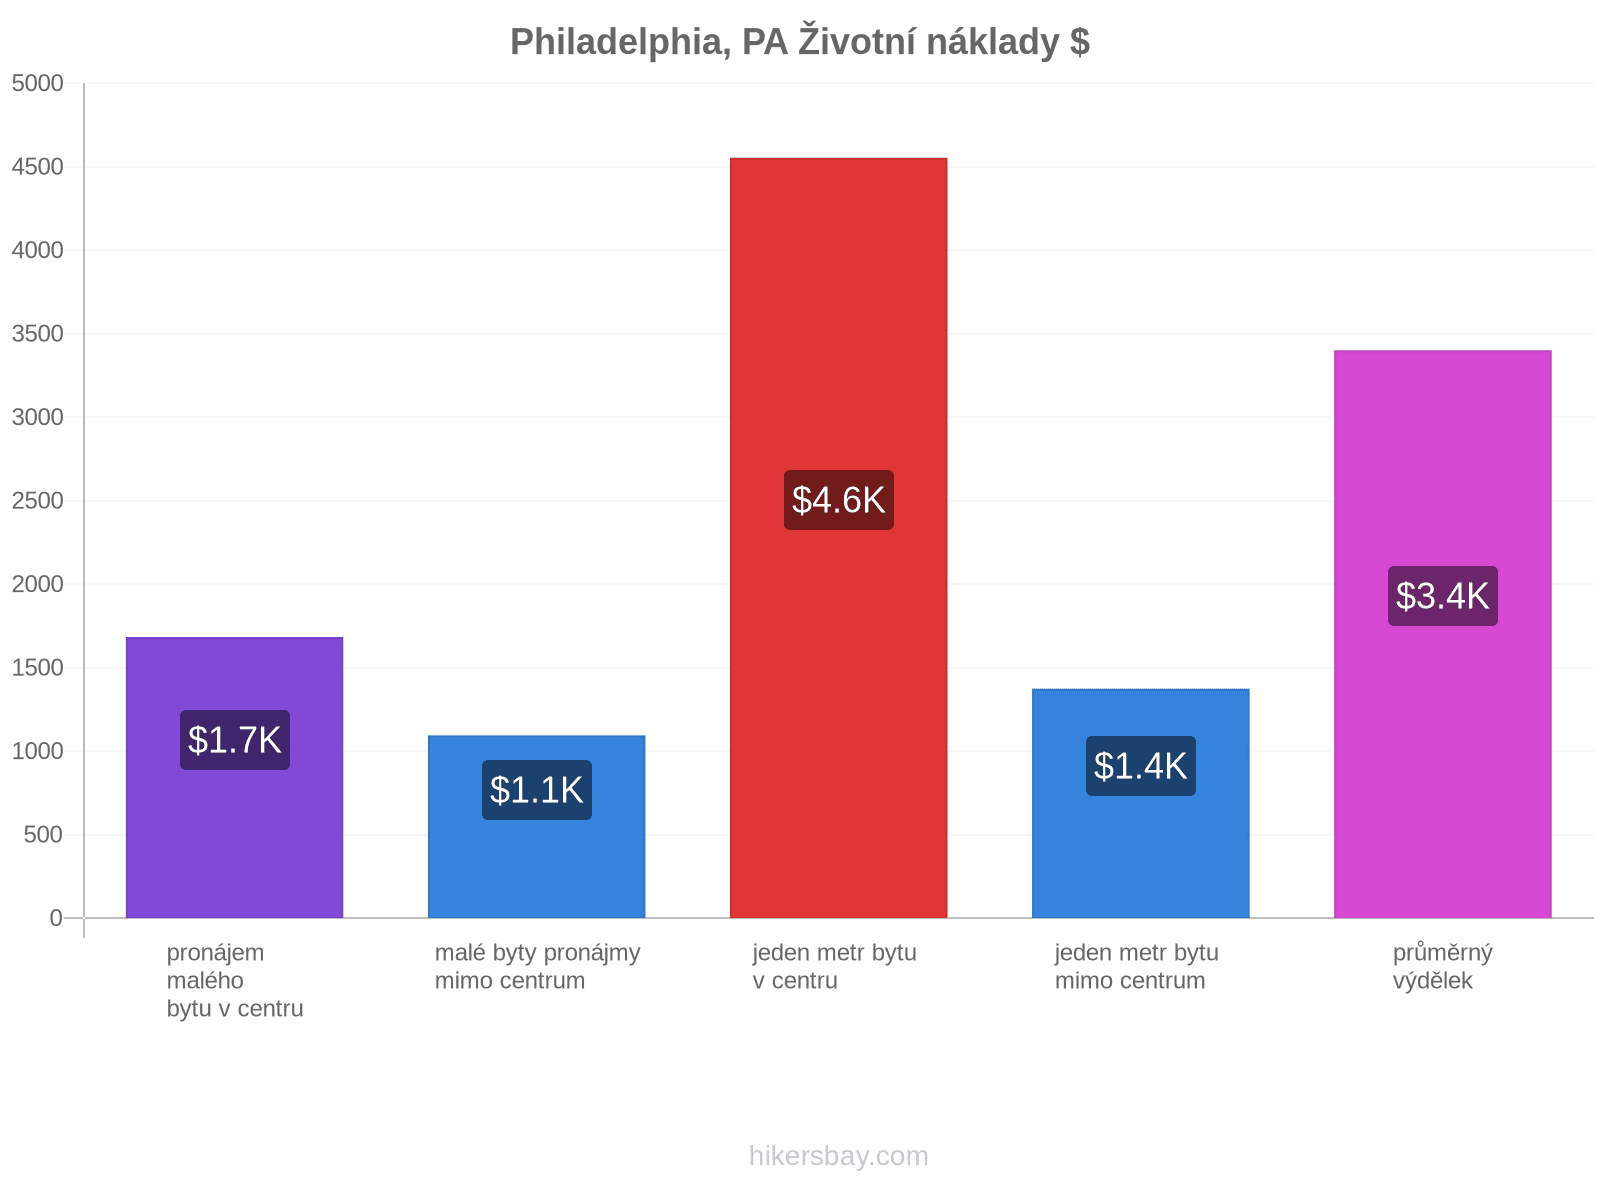 Philadelphia, PA životní náklady hikersbay.com